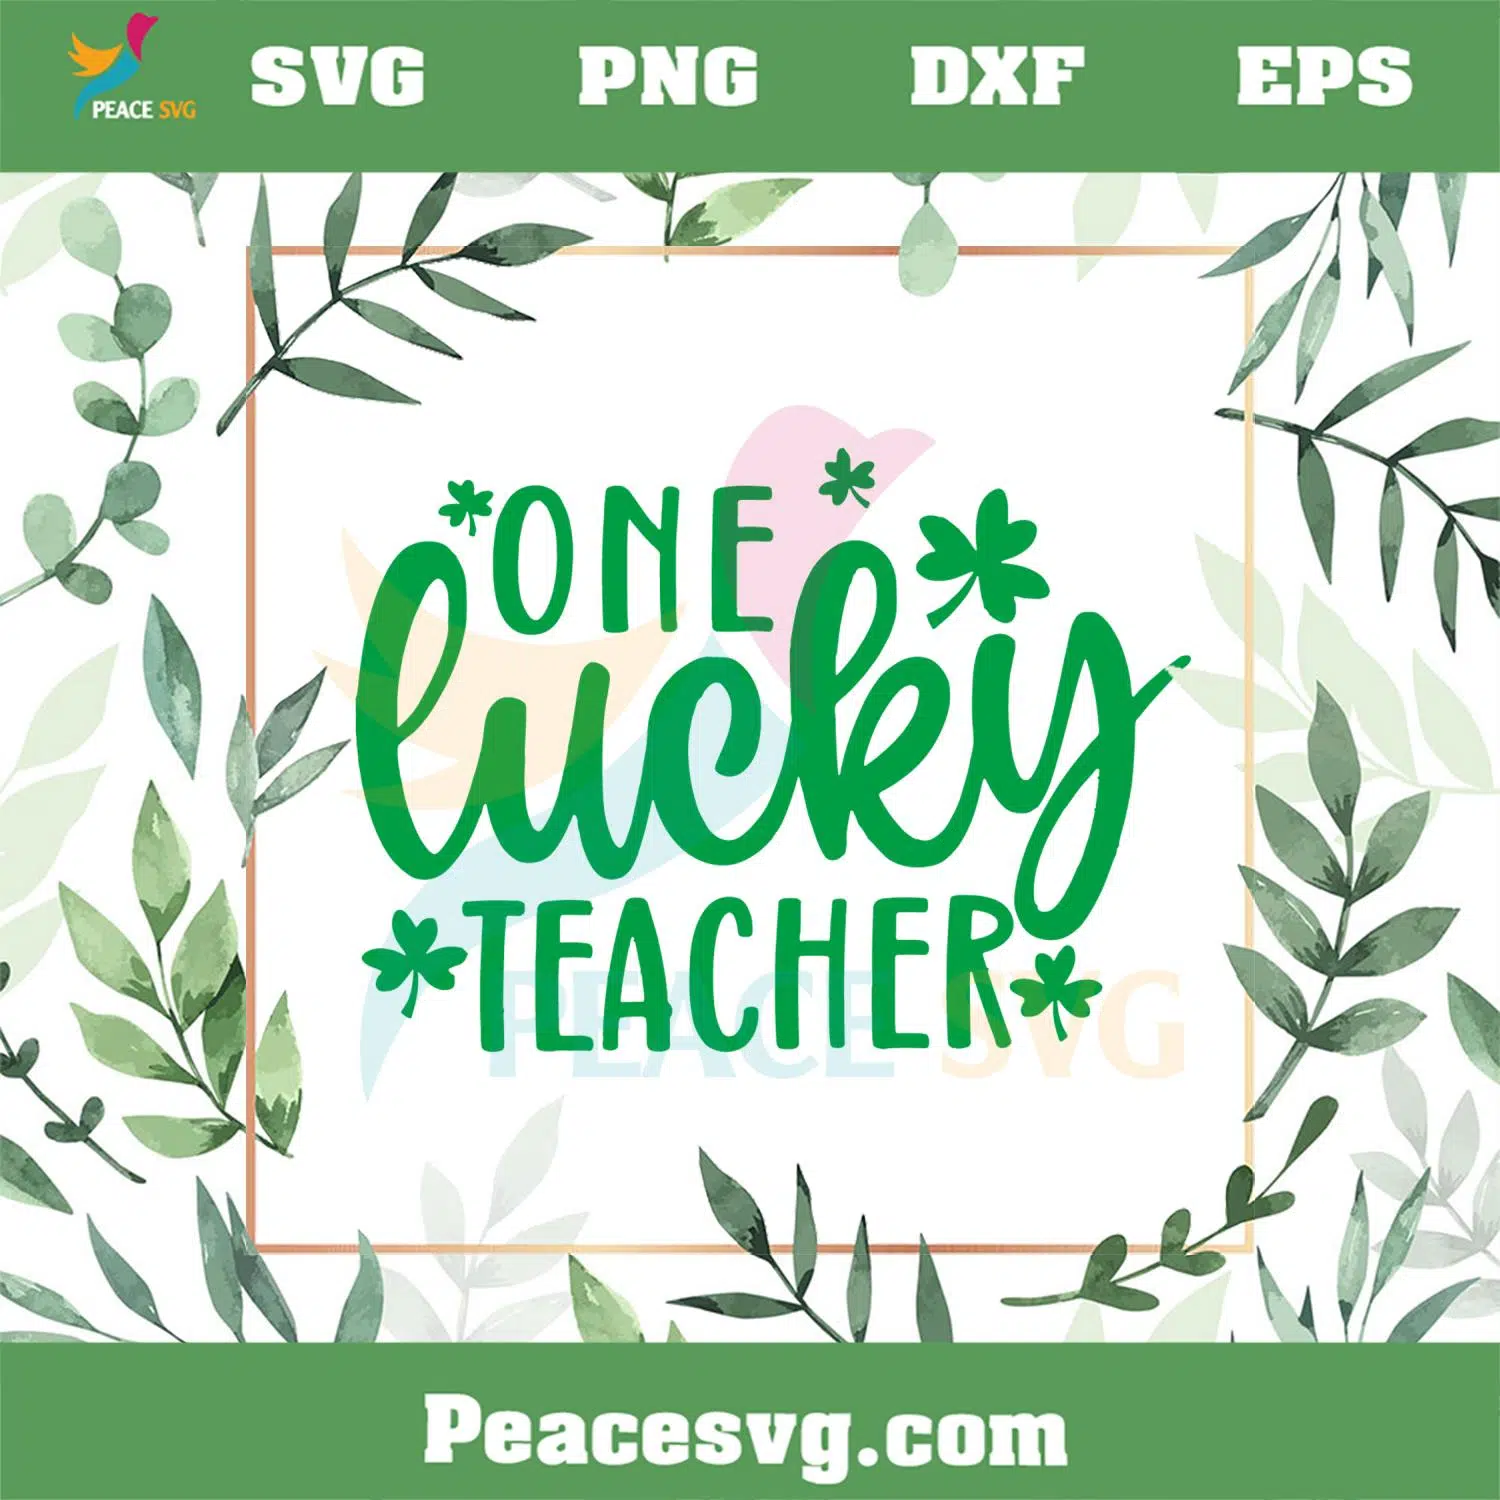 One Lucky Teacher Lucky Teacher St Patrick’s Day SVG Cutting Files